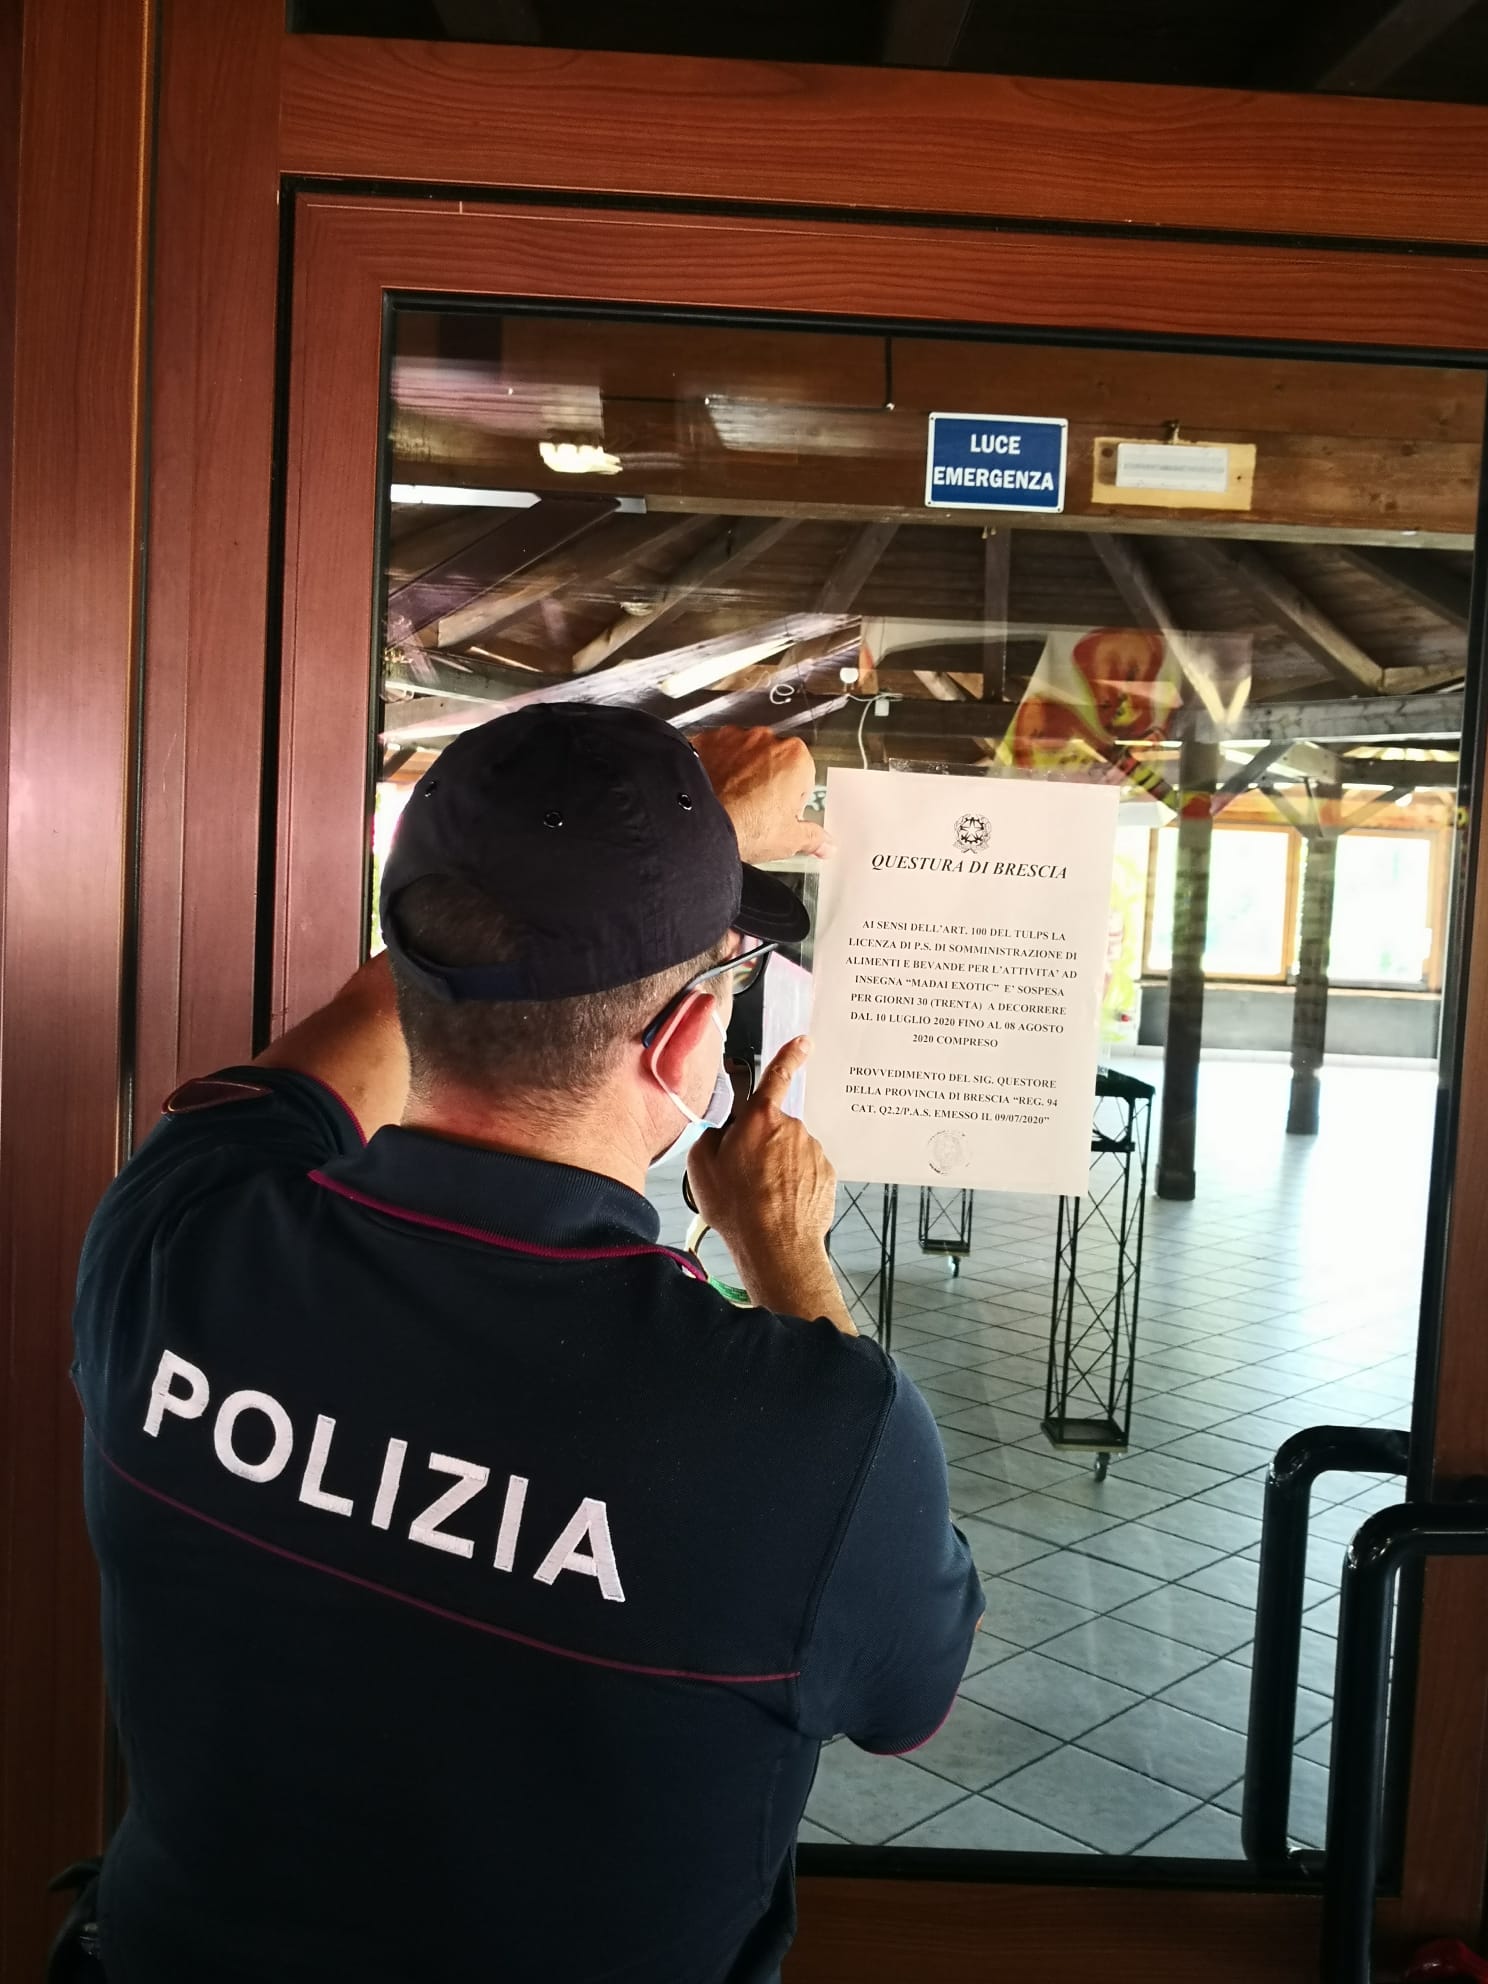 Polizia di Stato: “Madai Exotic” di Desenzano, sospesa la licenza per 30 giorni